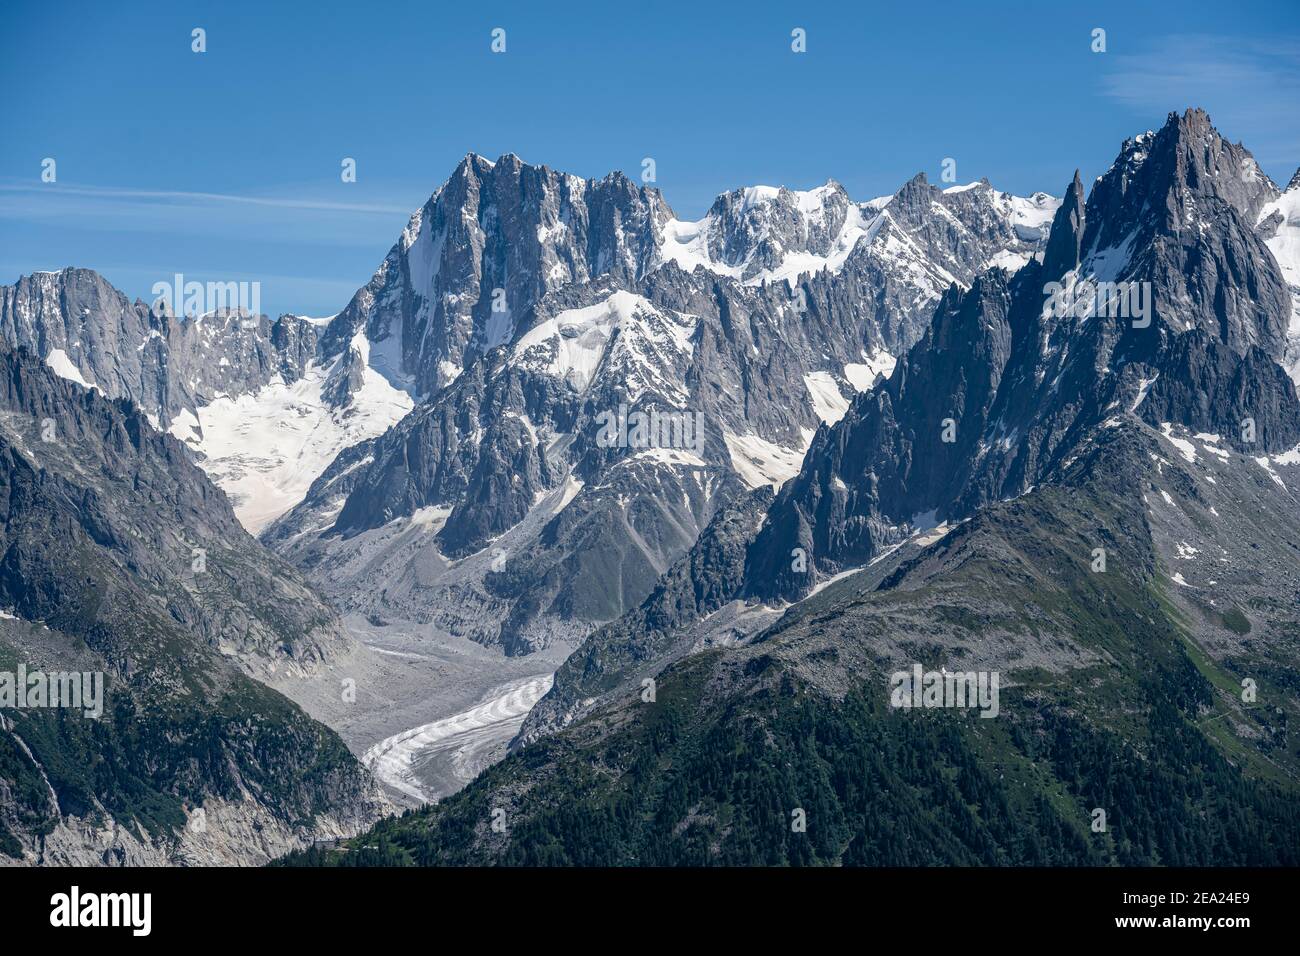 Ghiacciaio Mer de Glace, Grandes Jorasses e massiccio del Monte Bianco, Chamonix-Mont-Blanc, alta Savoia, Francia Foto Stock